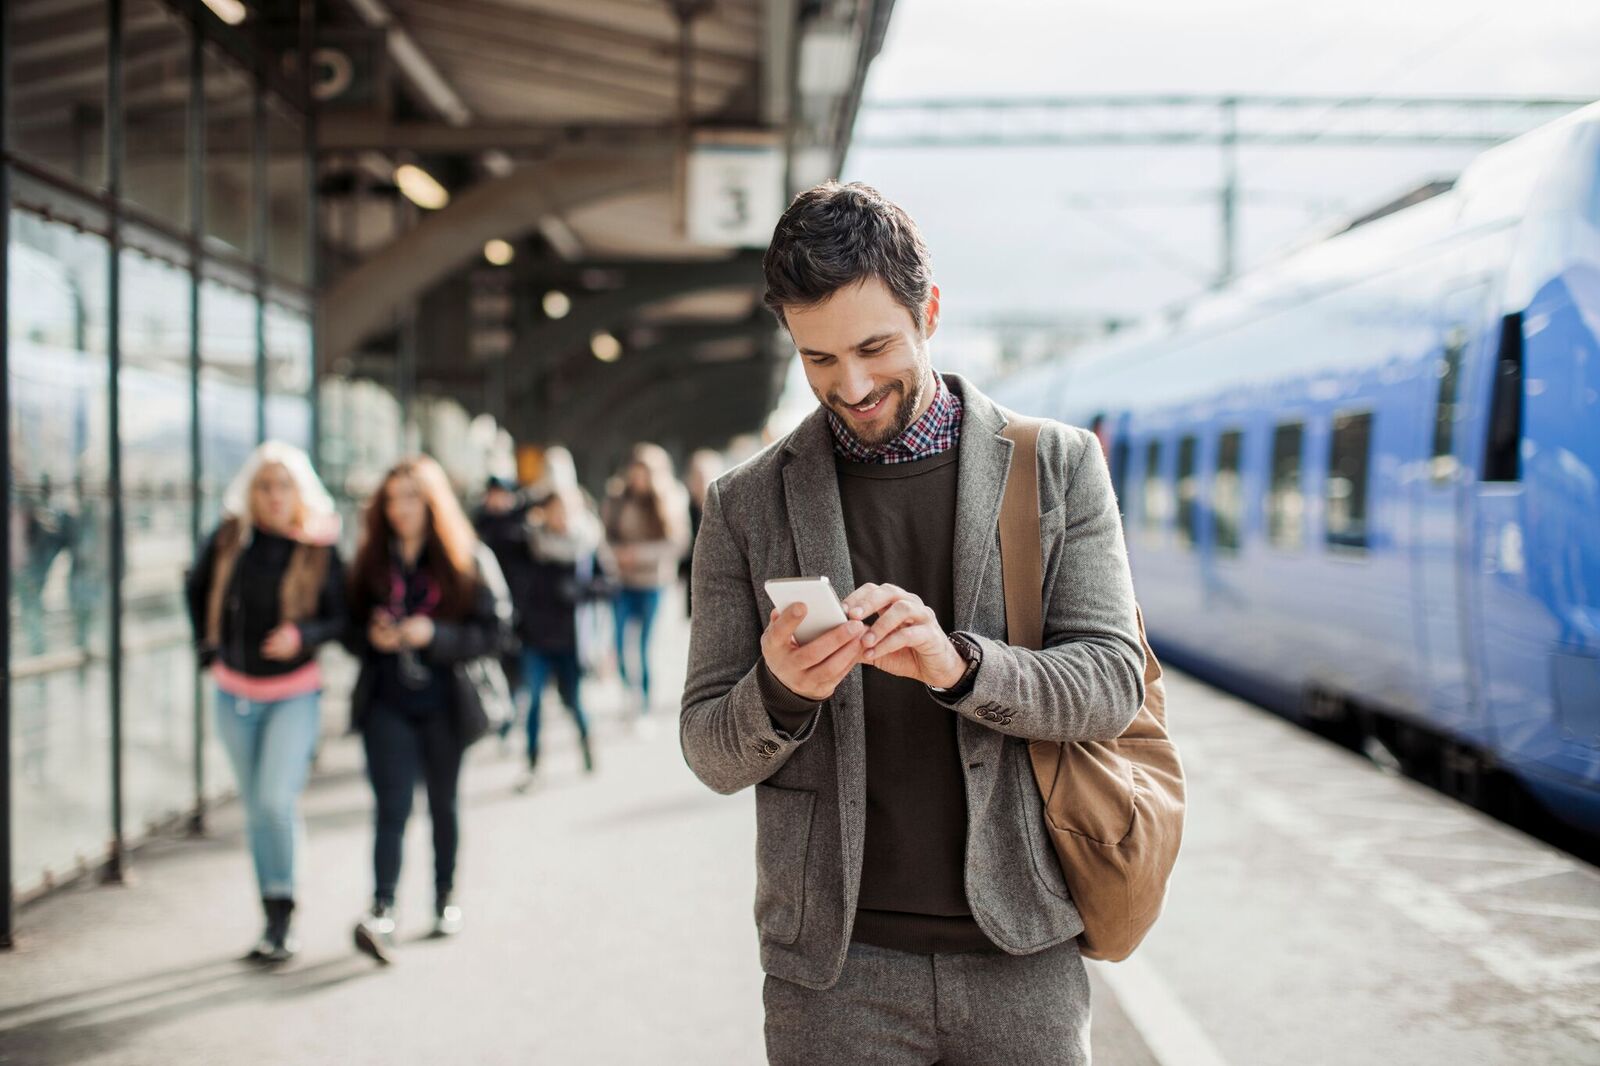 Man at Train Station Smiling Looking At Phone